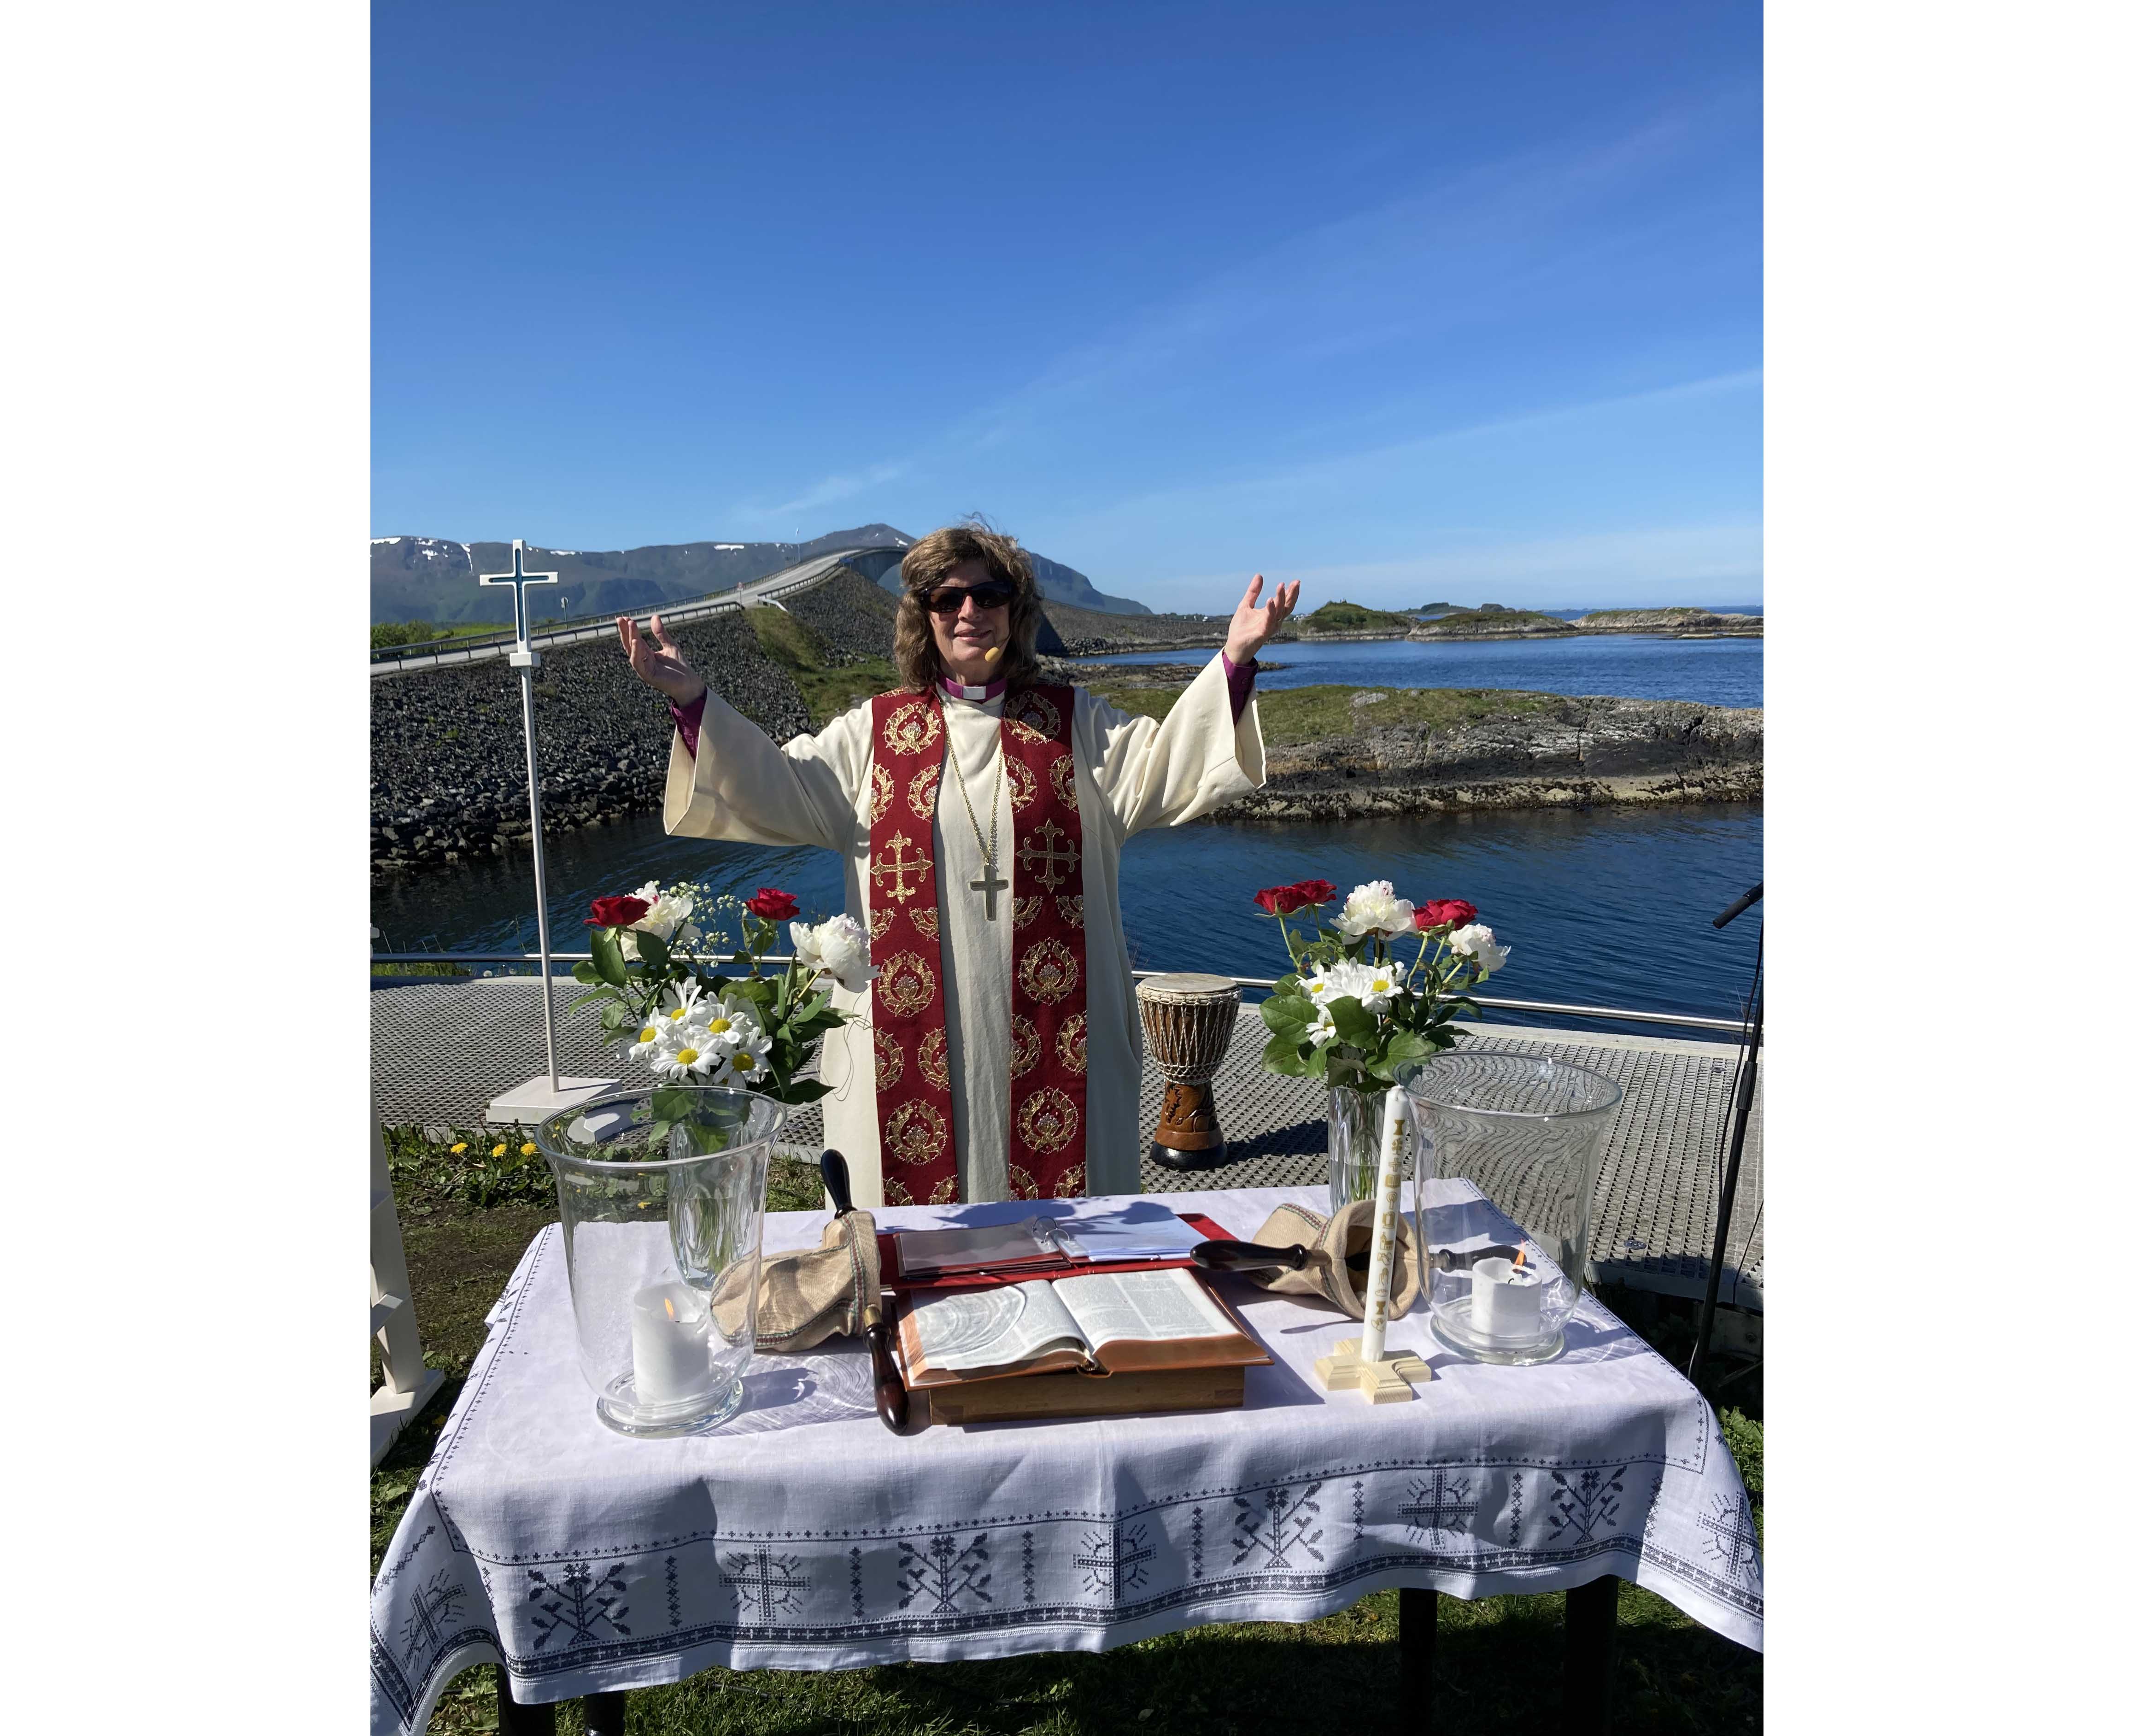 Bilete av biskop Ingeborg frå Havets dag ved Atlanterhavsvegen i 2022. Bilete: Møre bispedøme